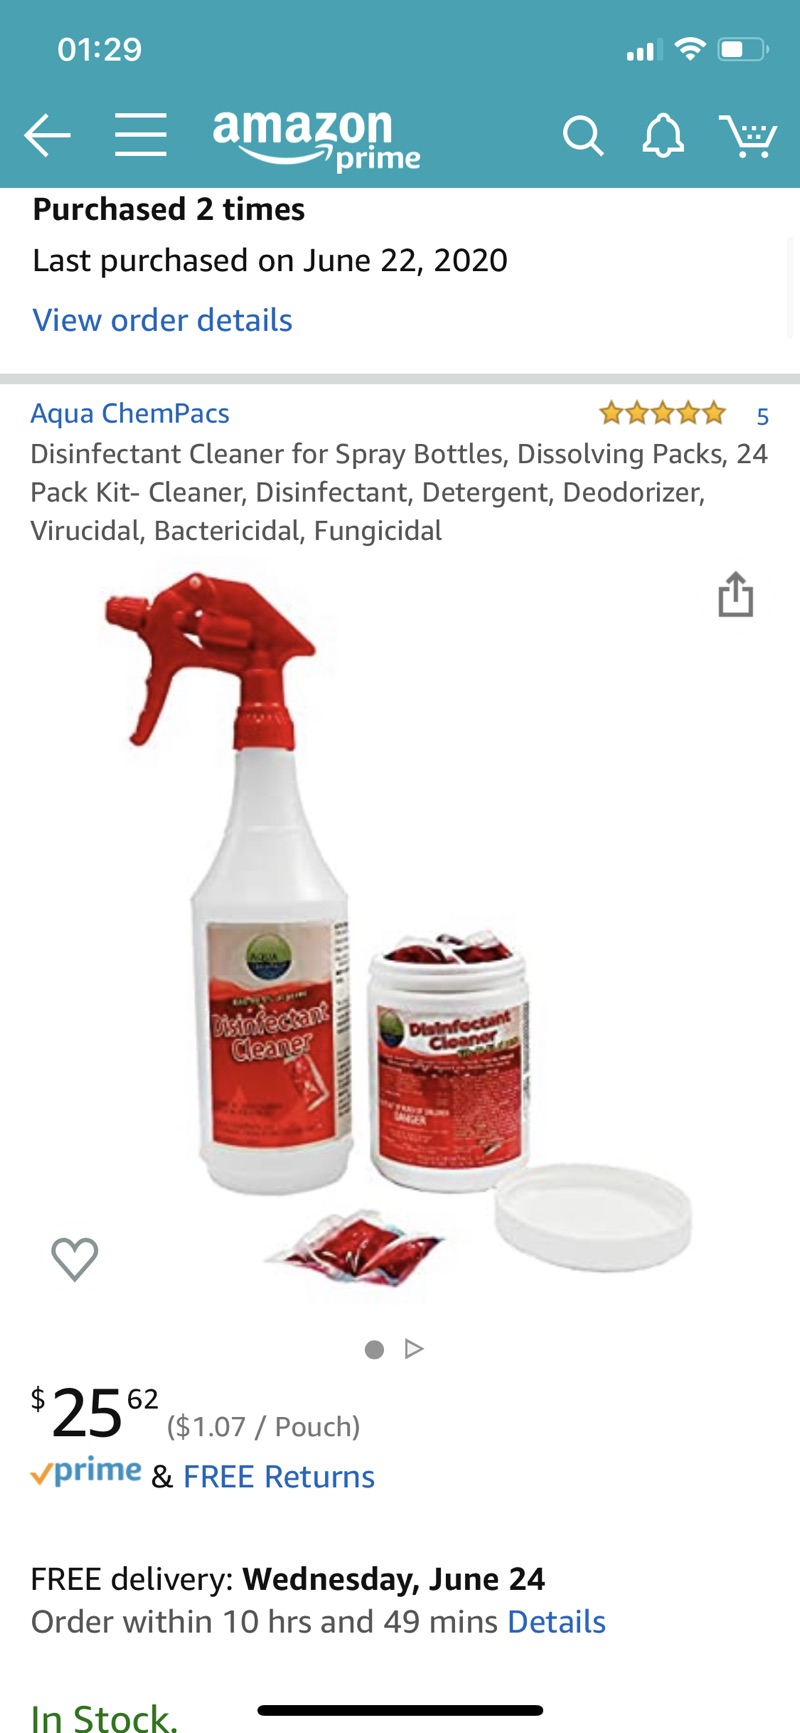 消毒水Amazon.com: Disinfectant Cleaner for Spray Bottles, Dissolving Packs, 24 Pack Kit- Cleaner, Disinfectant, Detergent, Deodorizer, Virucidal, Bactericidal, Fungicidal: Industrial & Scientific